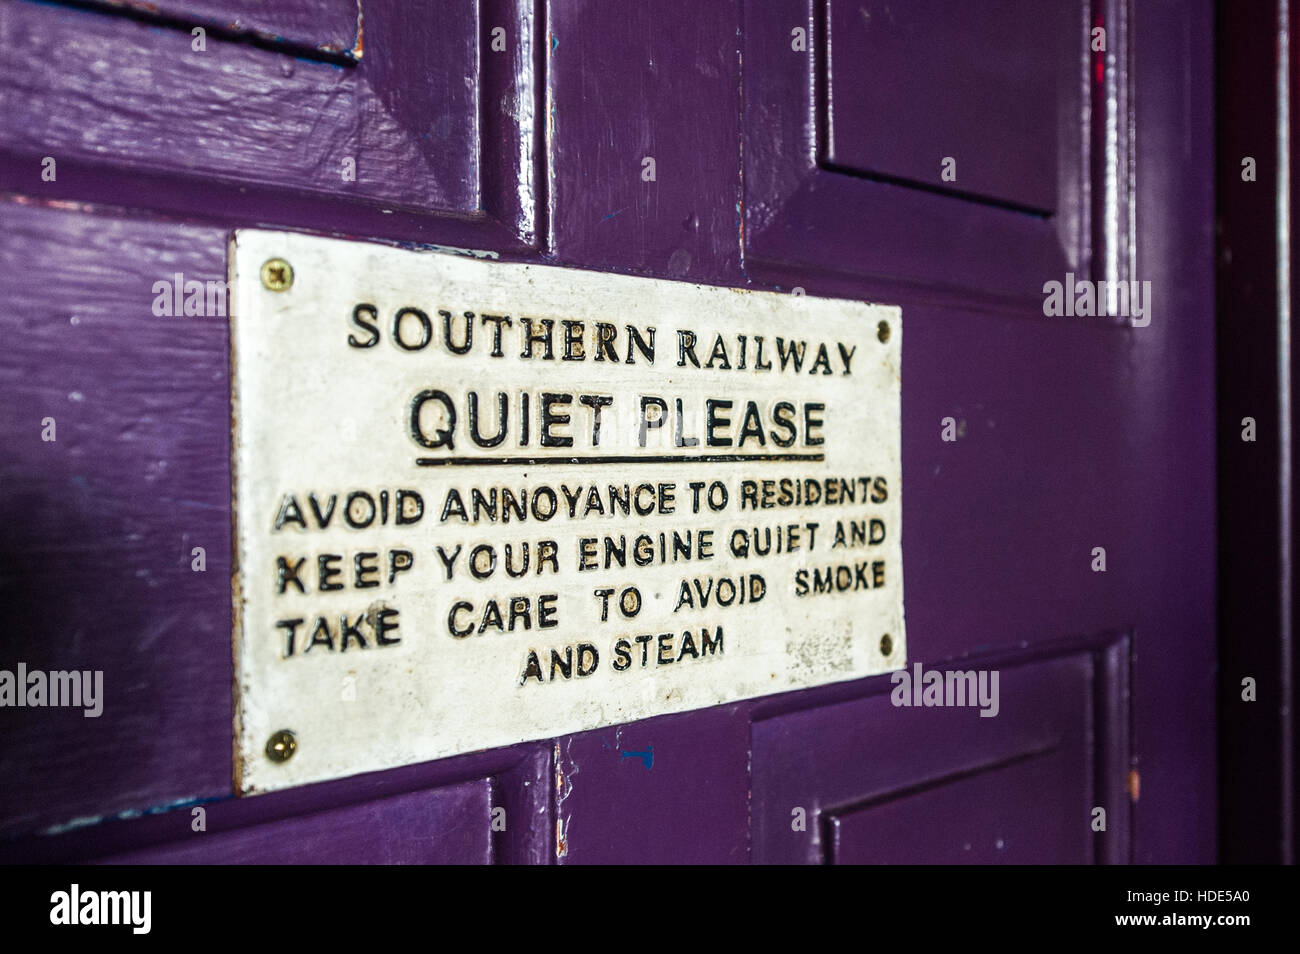 Señal de Southern Railway 'Quiet Please' en una puerta púrpura. Foto de stock